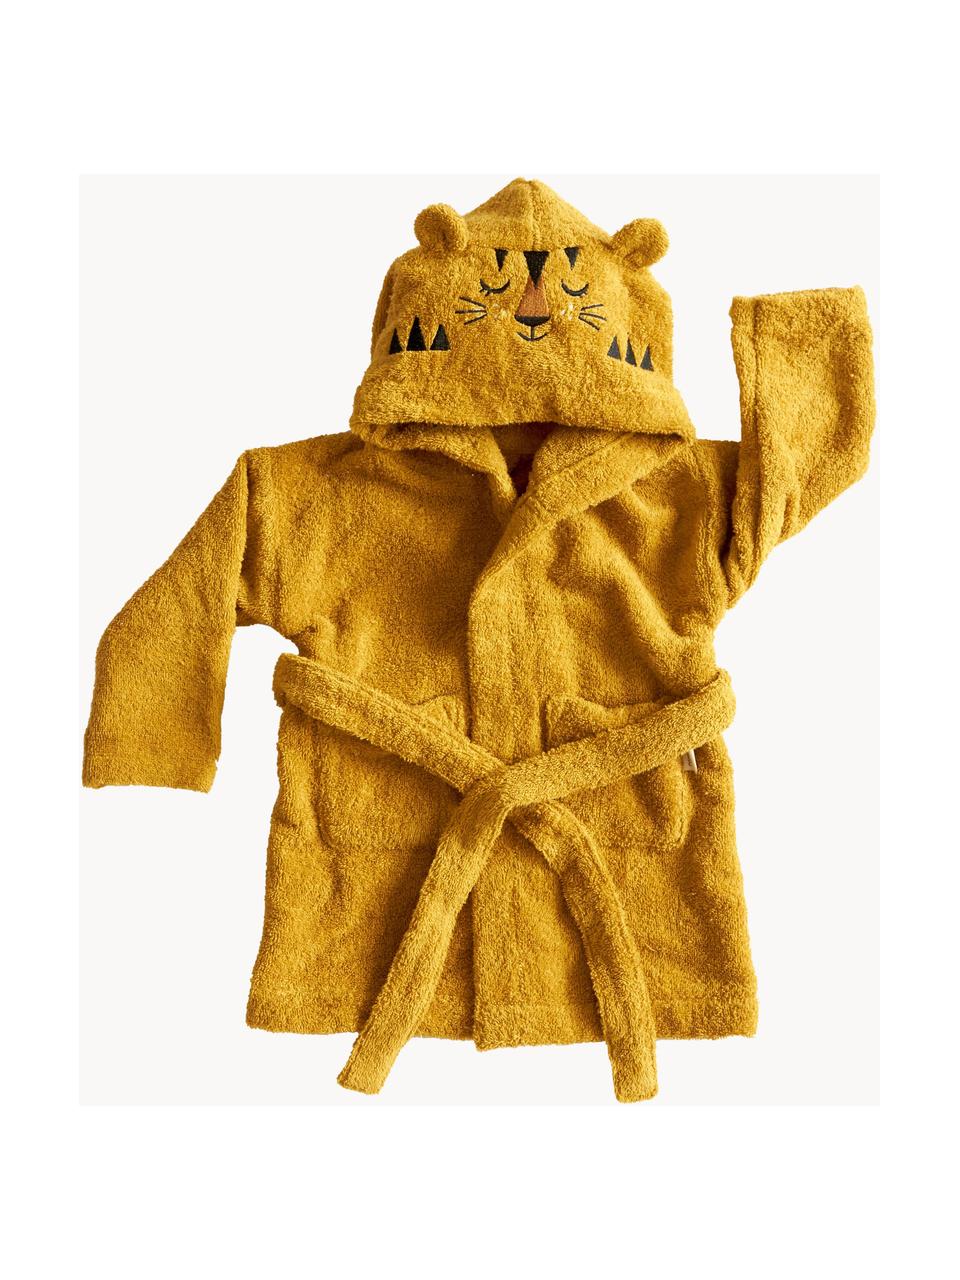 Dětský župan Tiger, různé velikosti, 100 % bio bavlna, s certifikátem GOTS, Okrová žlutá, Š 36 cm, D 48 cm